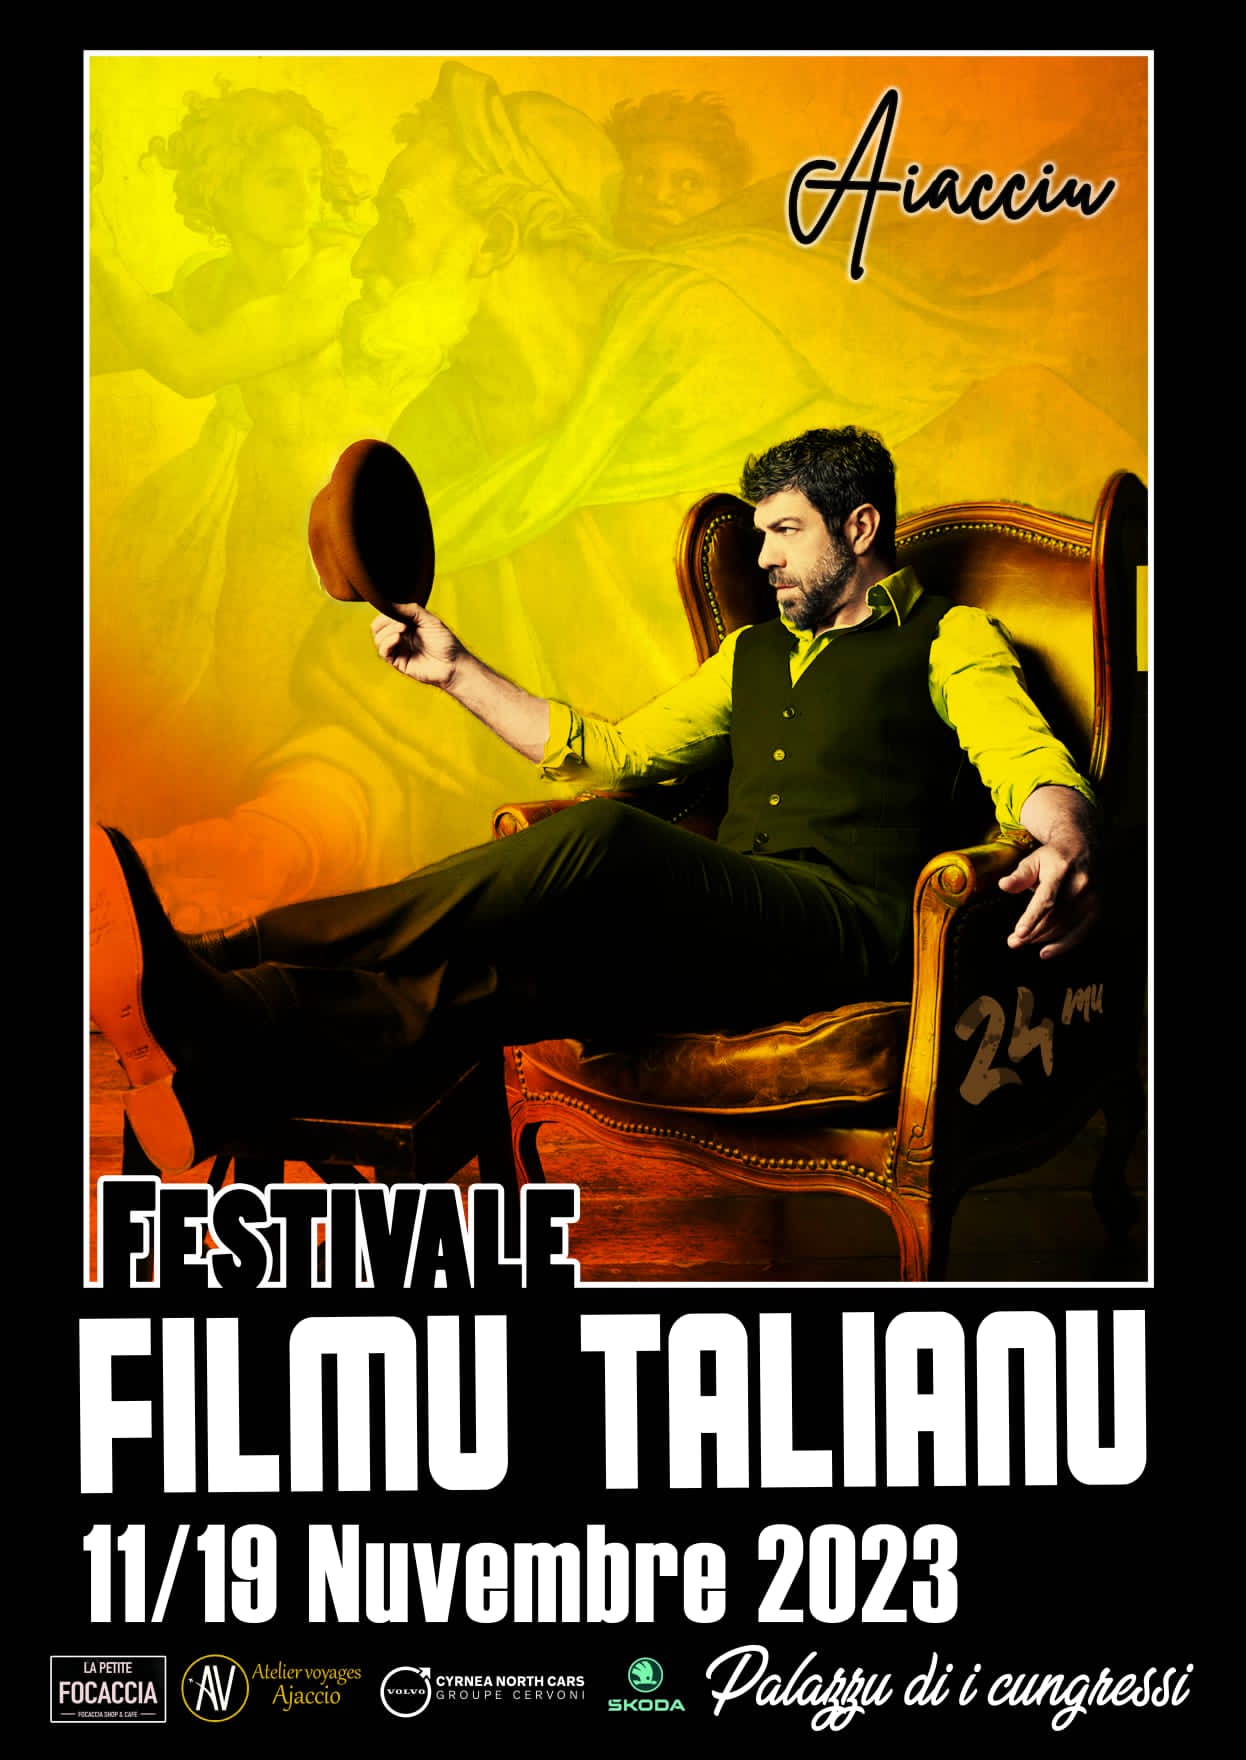 Le festival italien tient sa 24e édition du 11 au 19 novembre à Ajaccio.